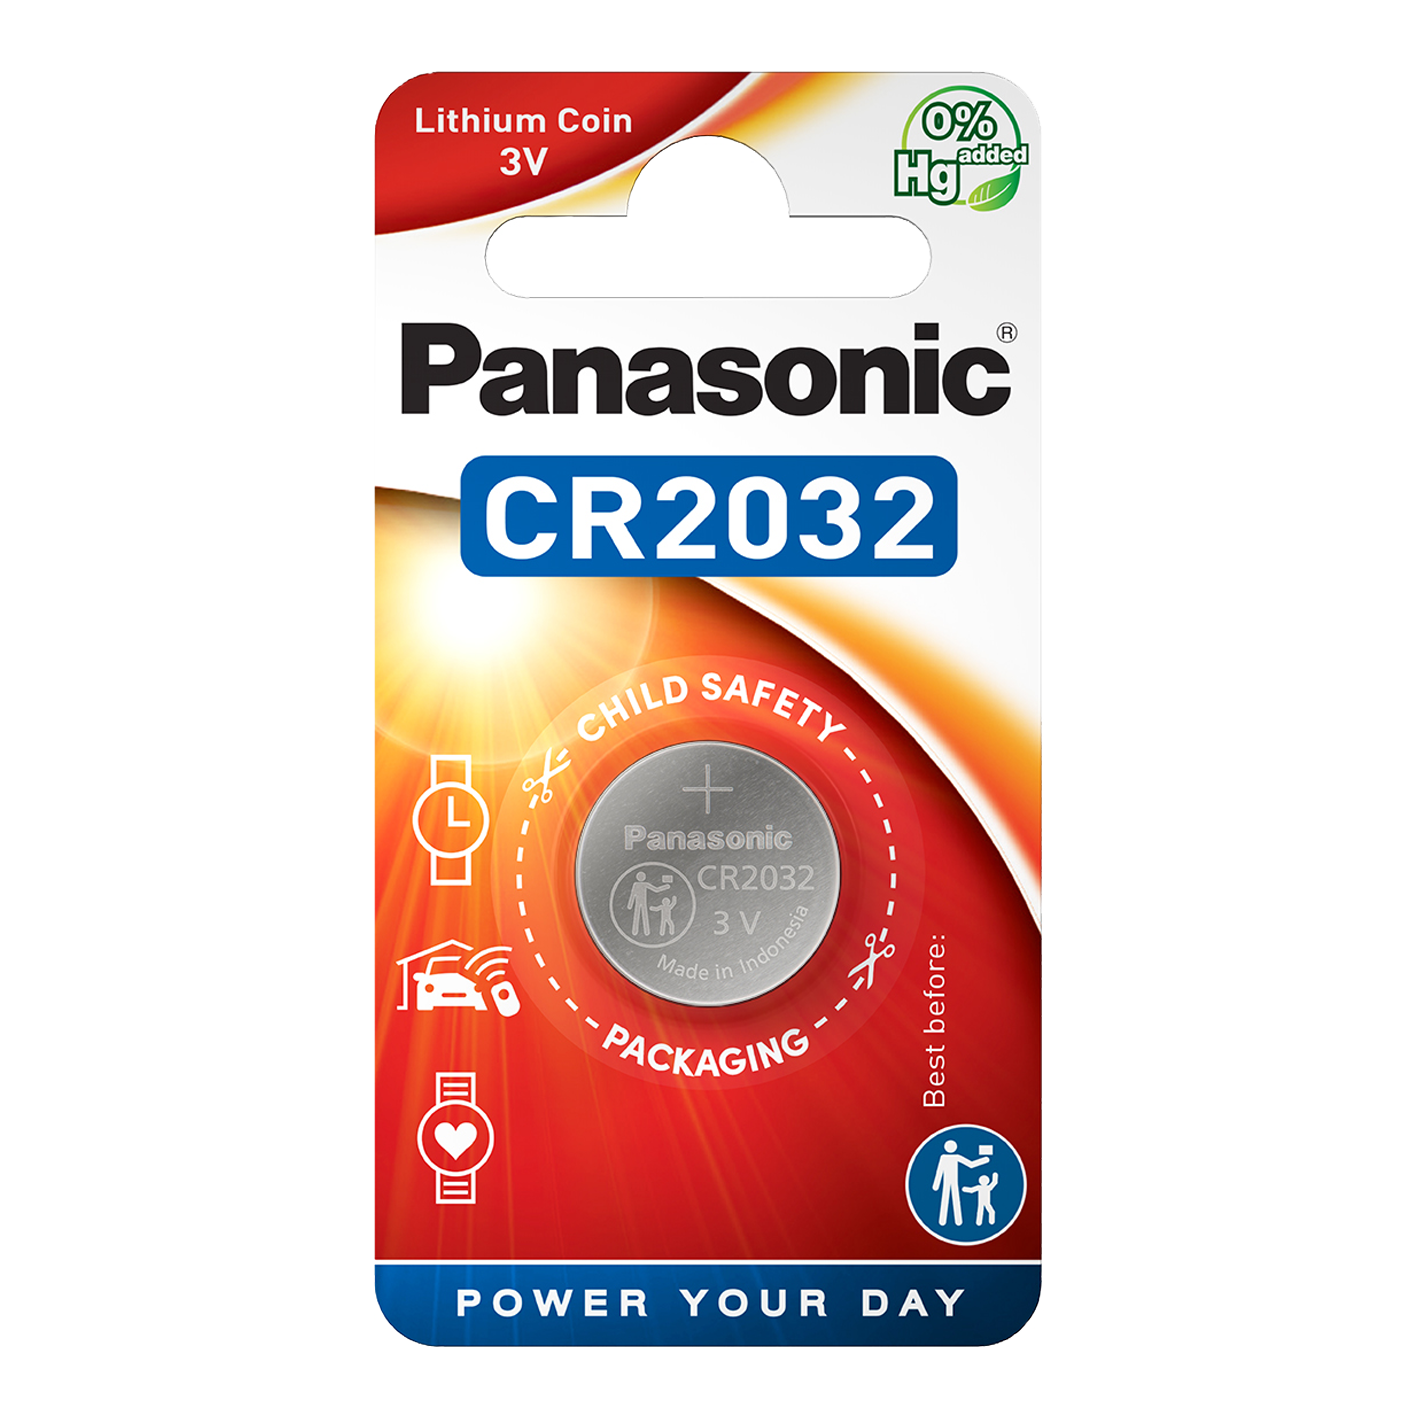 Panasonic CR2032 Lithium, Pack of 1